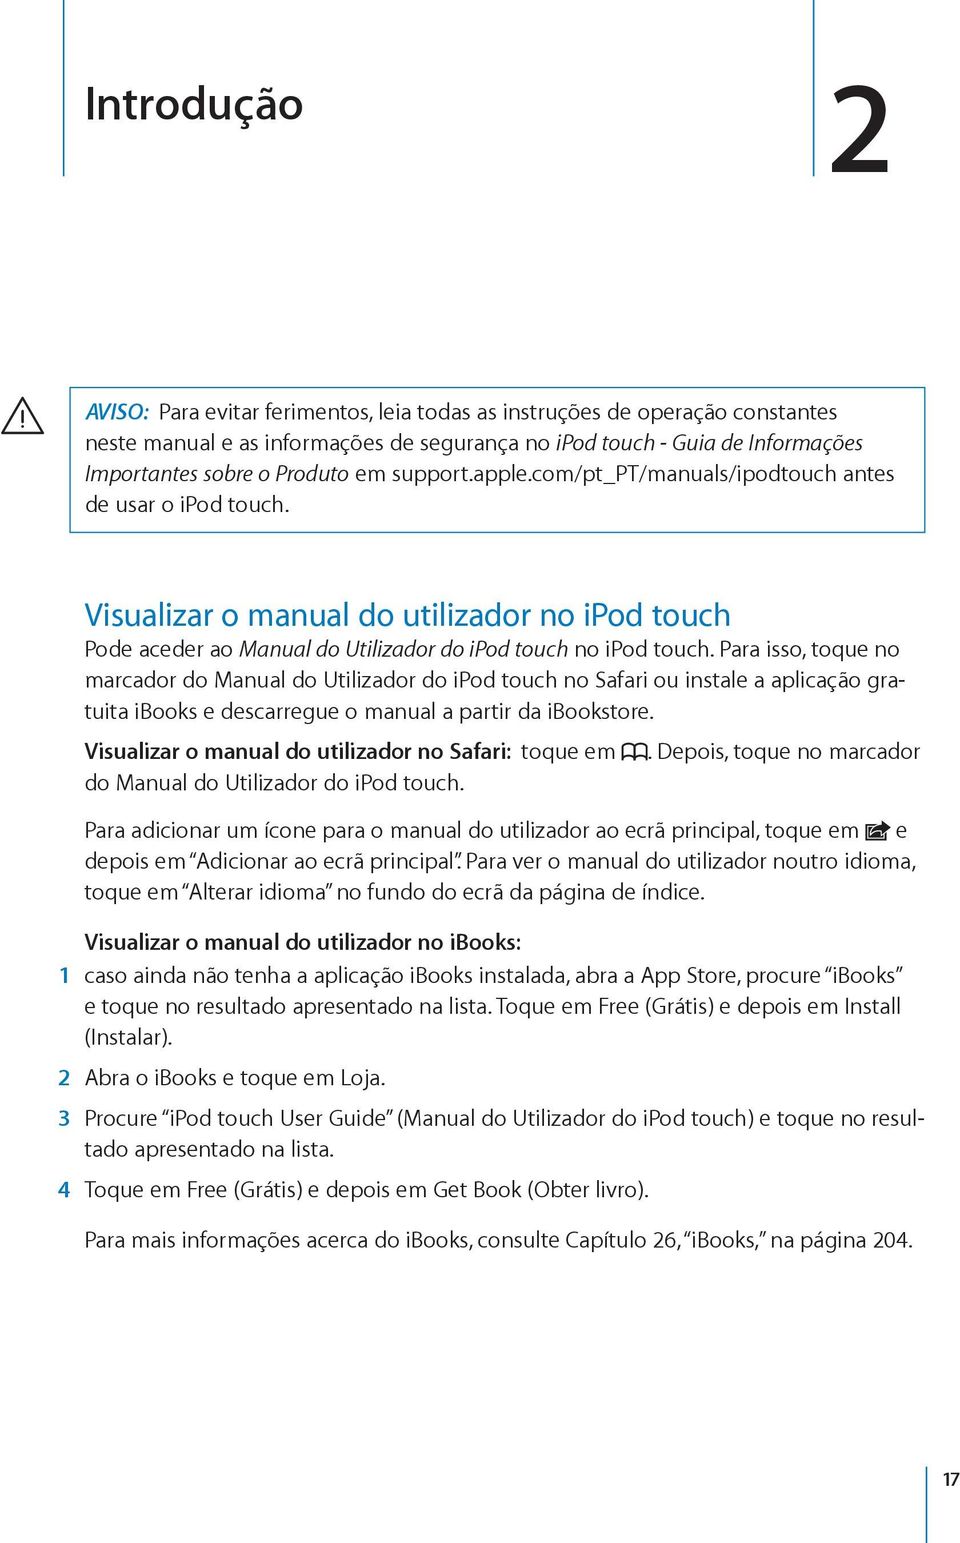 Para isso, toque no marcador do Manual do Utilizador do ipod touch no Safari ou instale a aplicação gratuita ibooks e descarregue o manual a partir da ibookstore.